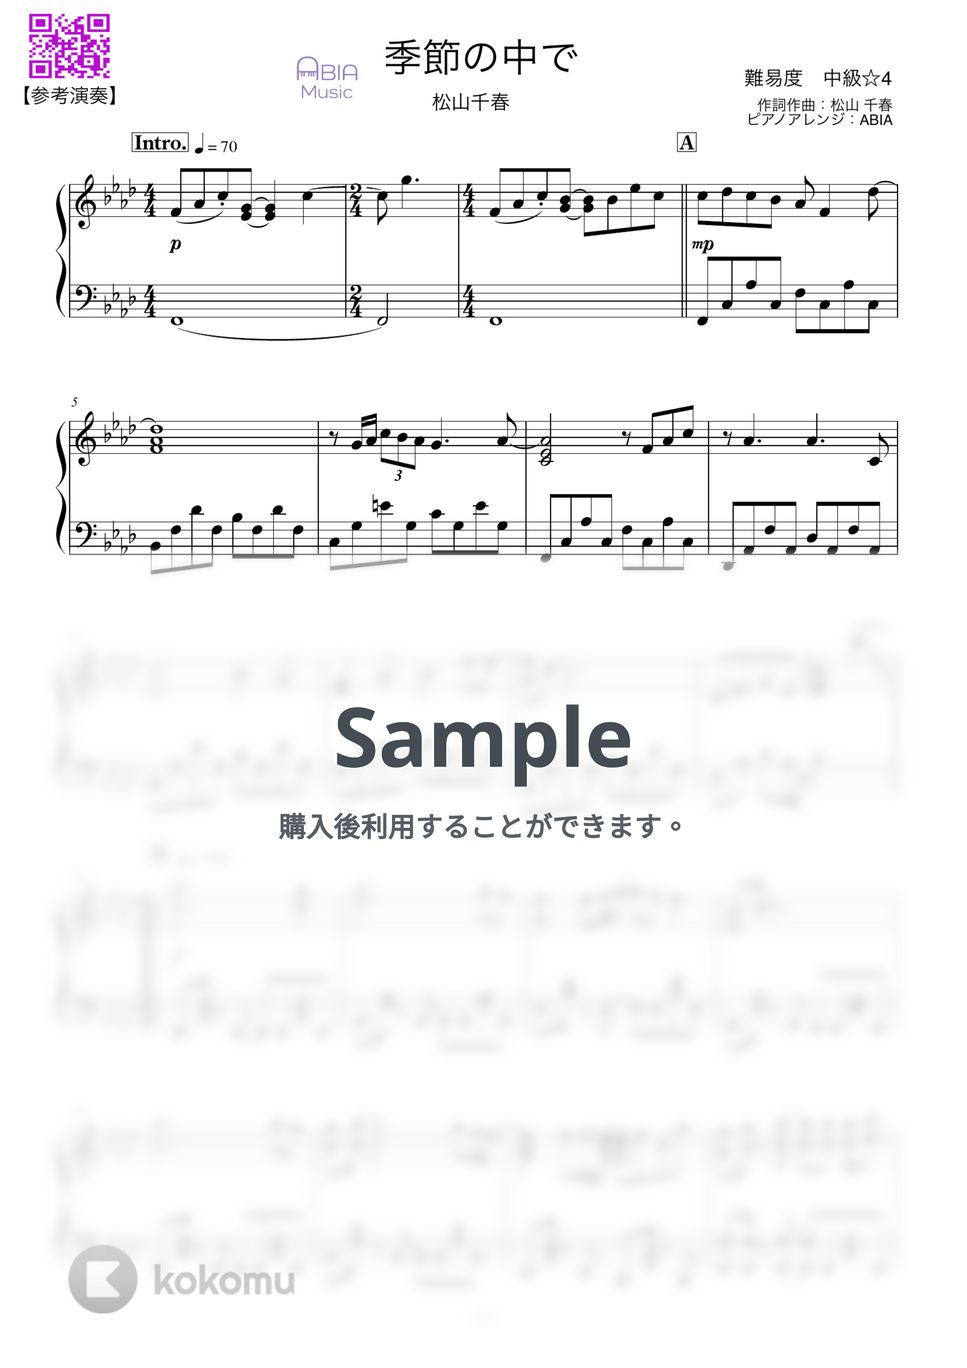 松山千春 - 季節の中で by ABIA Music